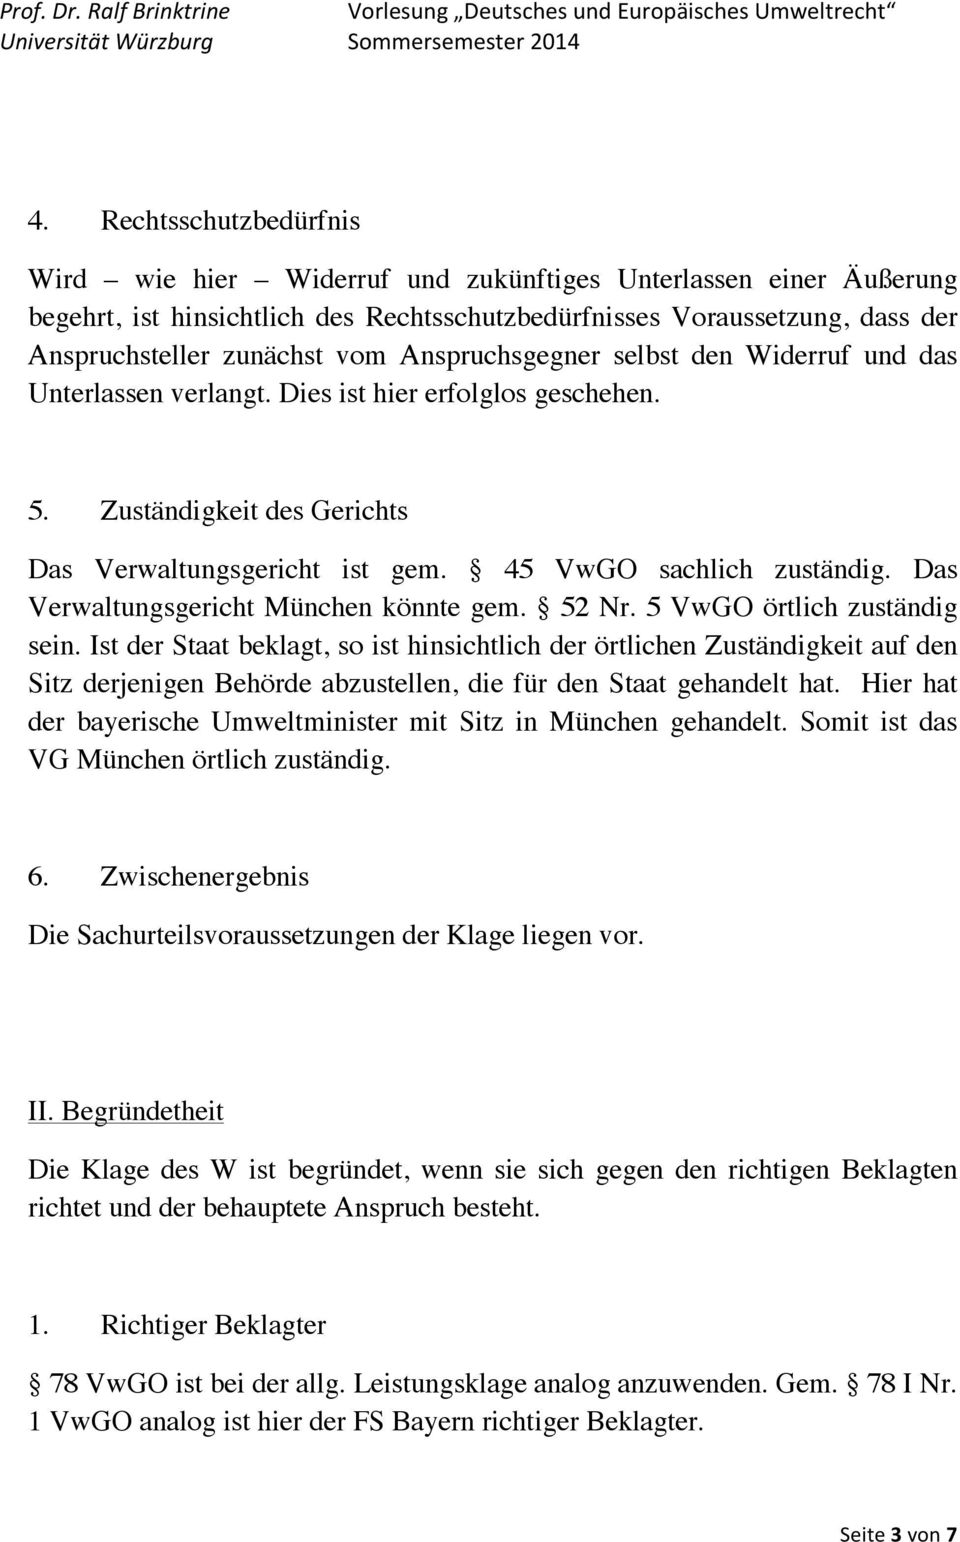 Das Verwaltungsgericht München könnte gem. 52 Nr. 5 VwGO örtlich zuständig sein.